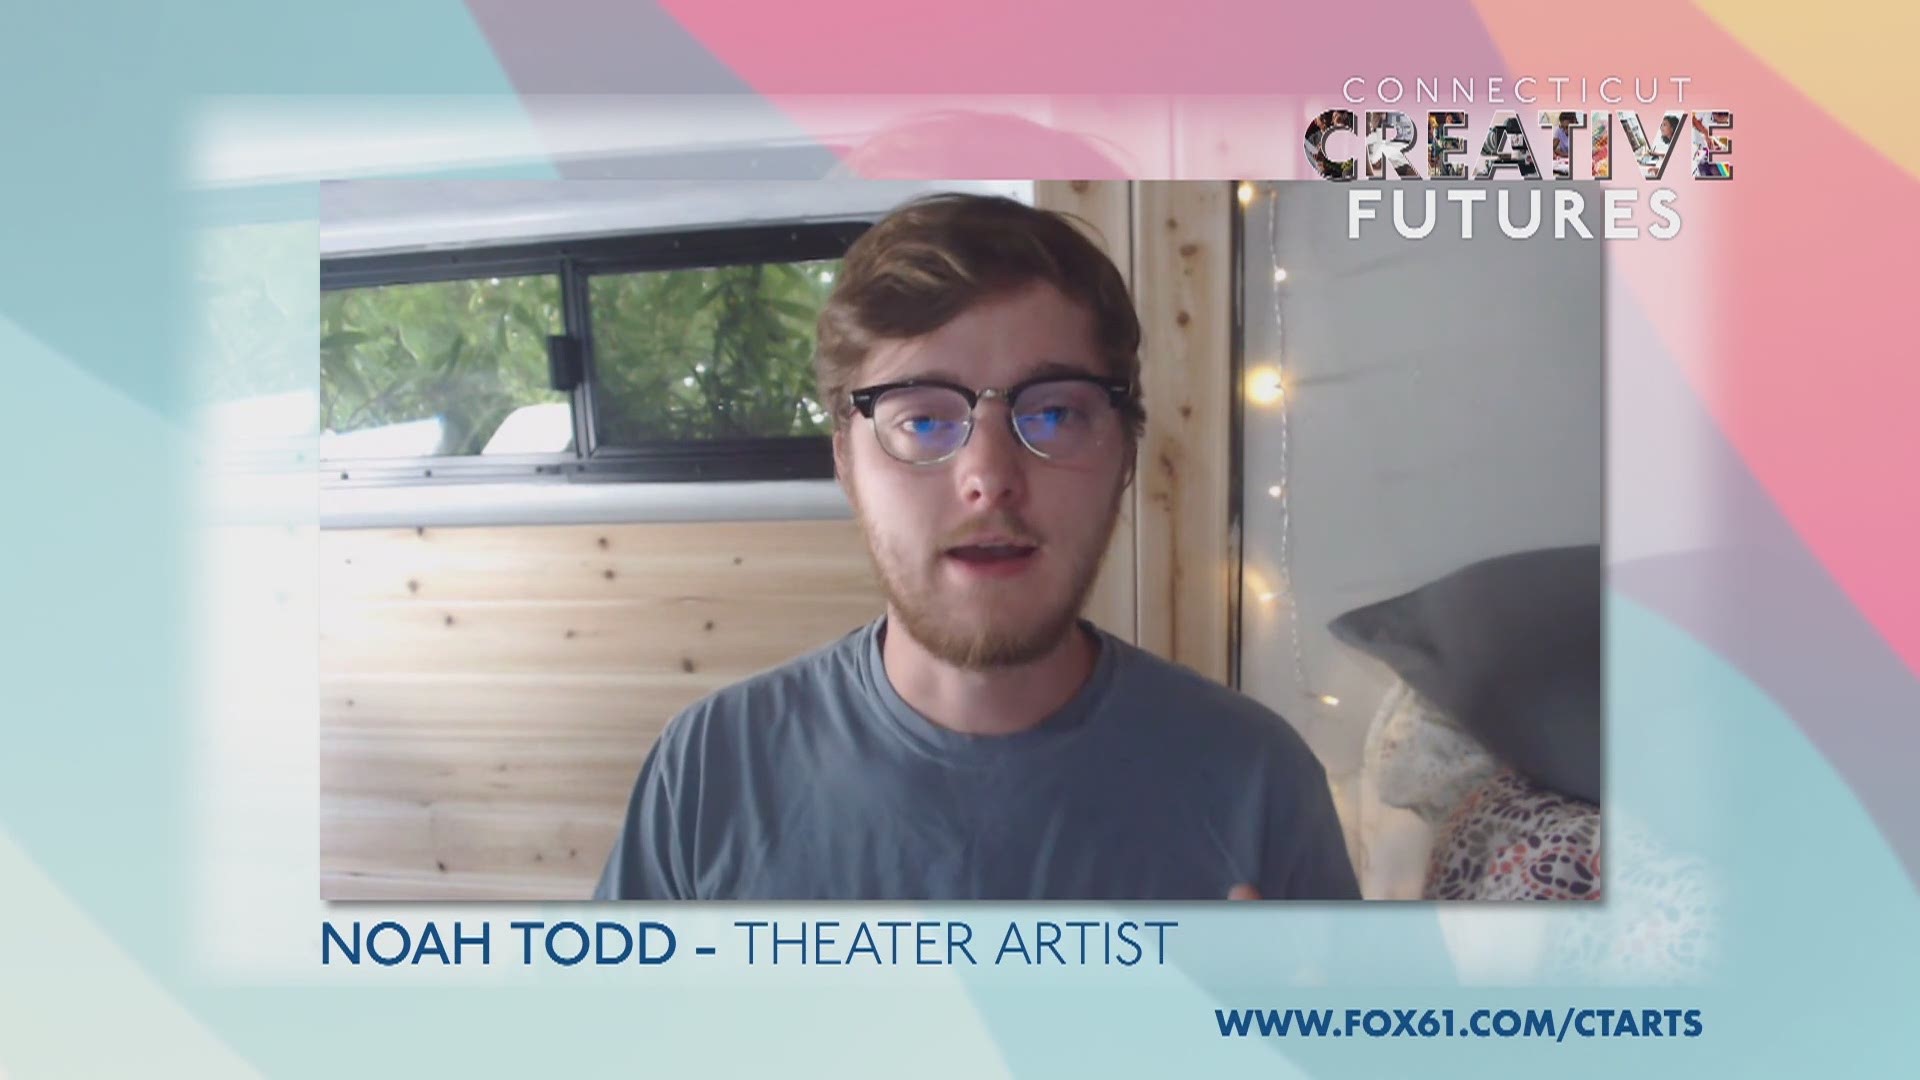 Meet Theater and Musical Artist Noah Todd.